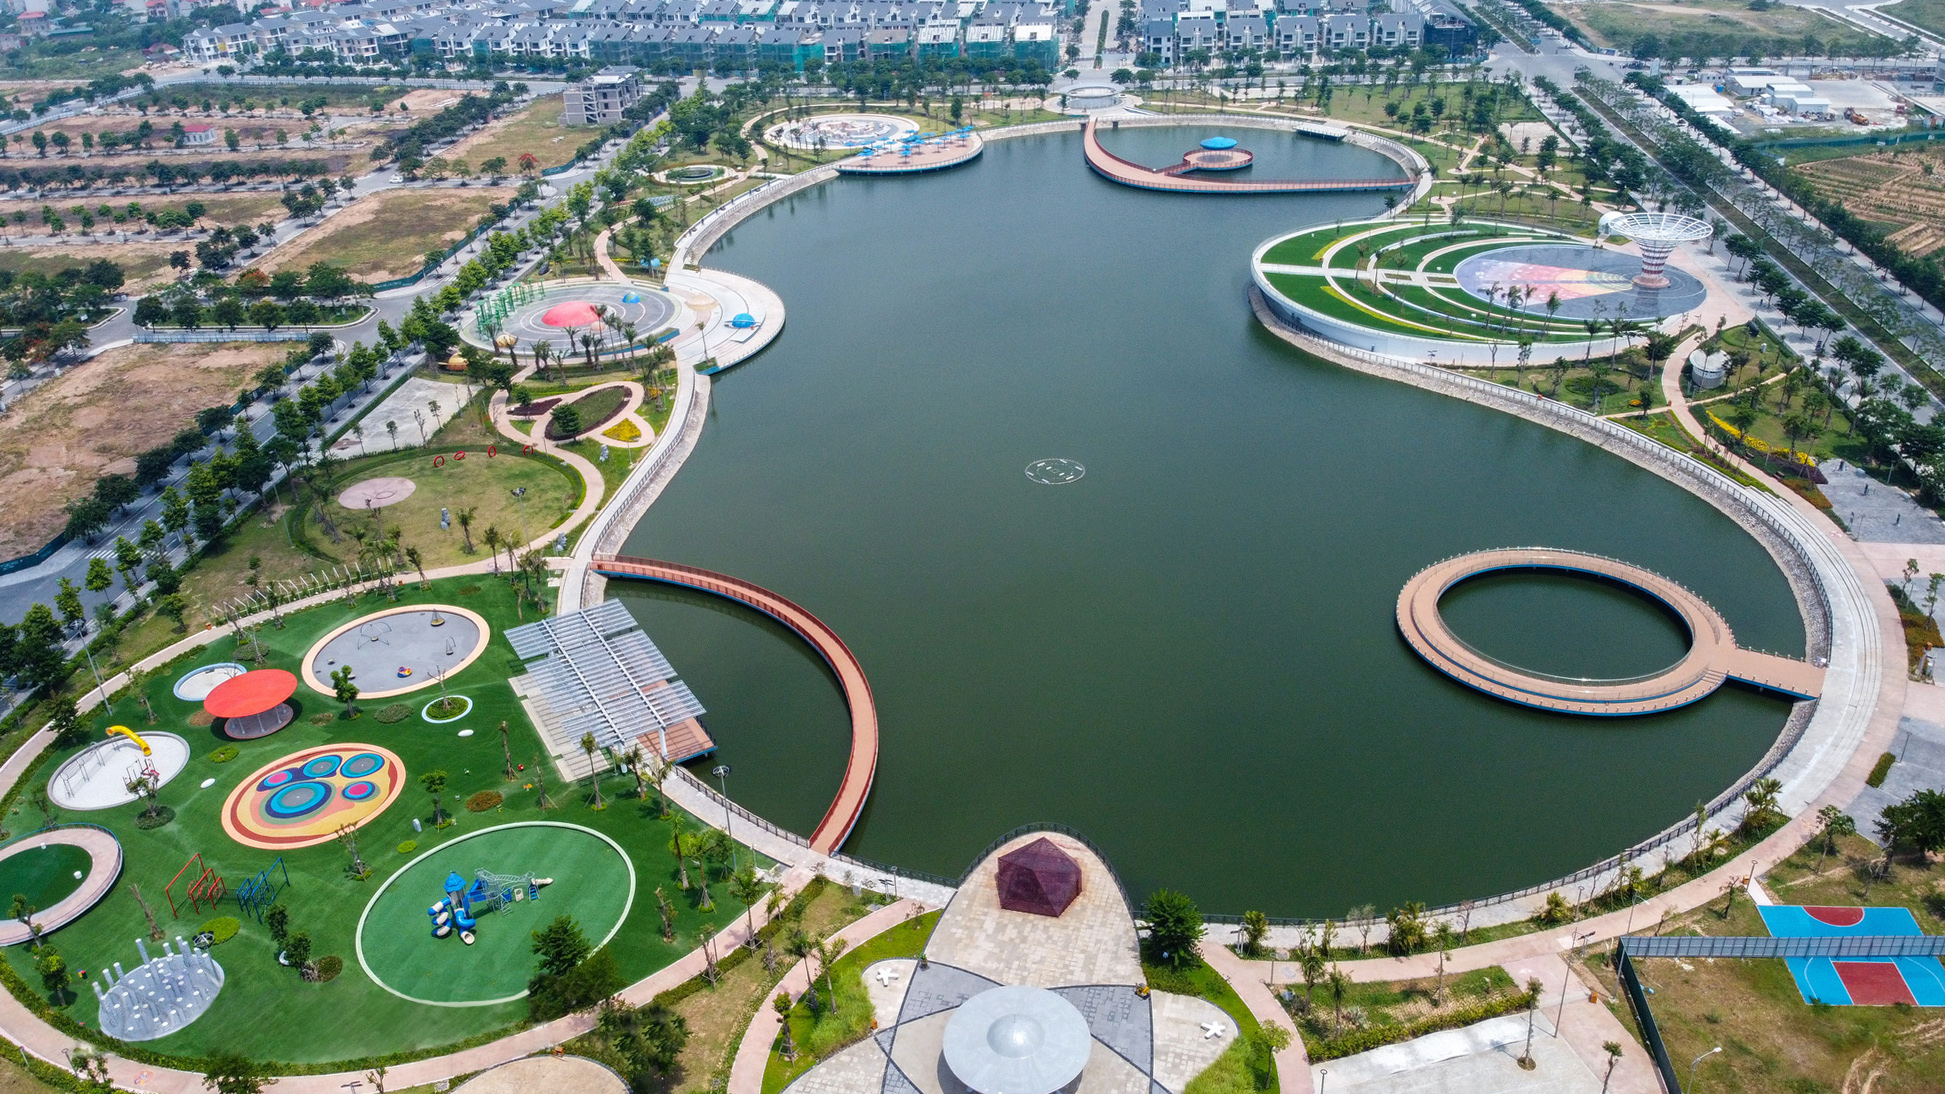 Công viên 260 tỷ chủ đề thiên văn học bỏ hoang sau 2 năm hoàn thành ở Hà Nội - Ảnh 1.